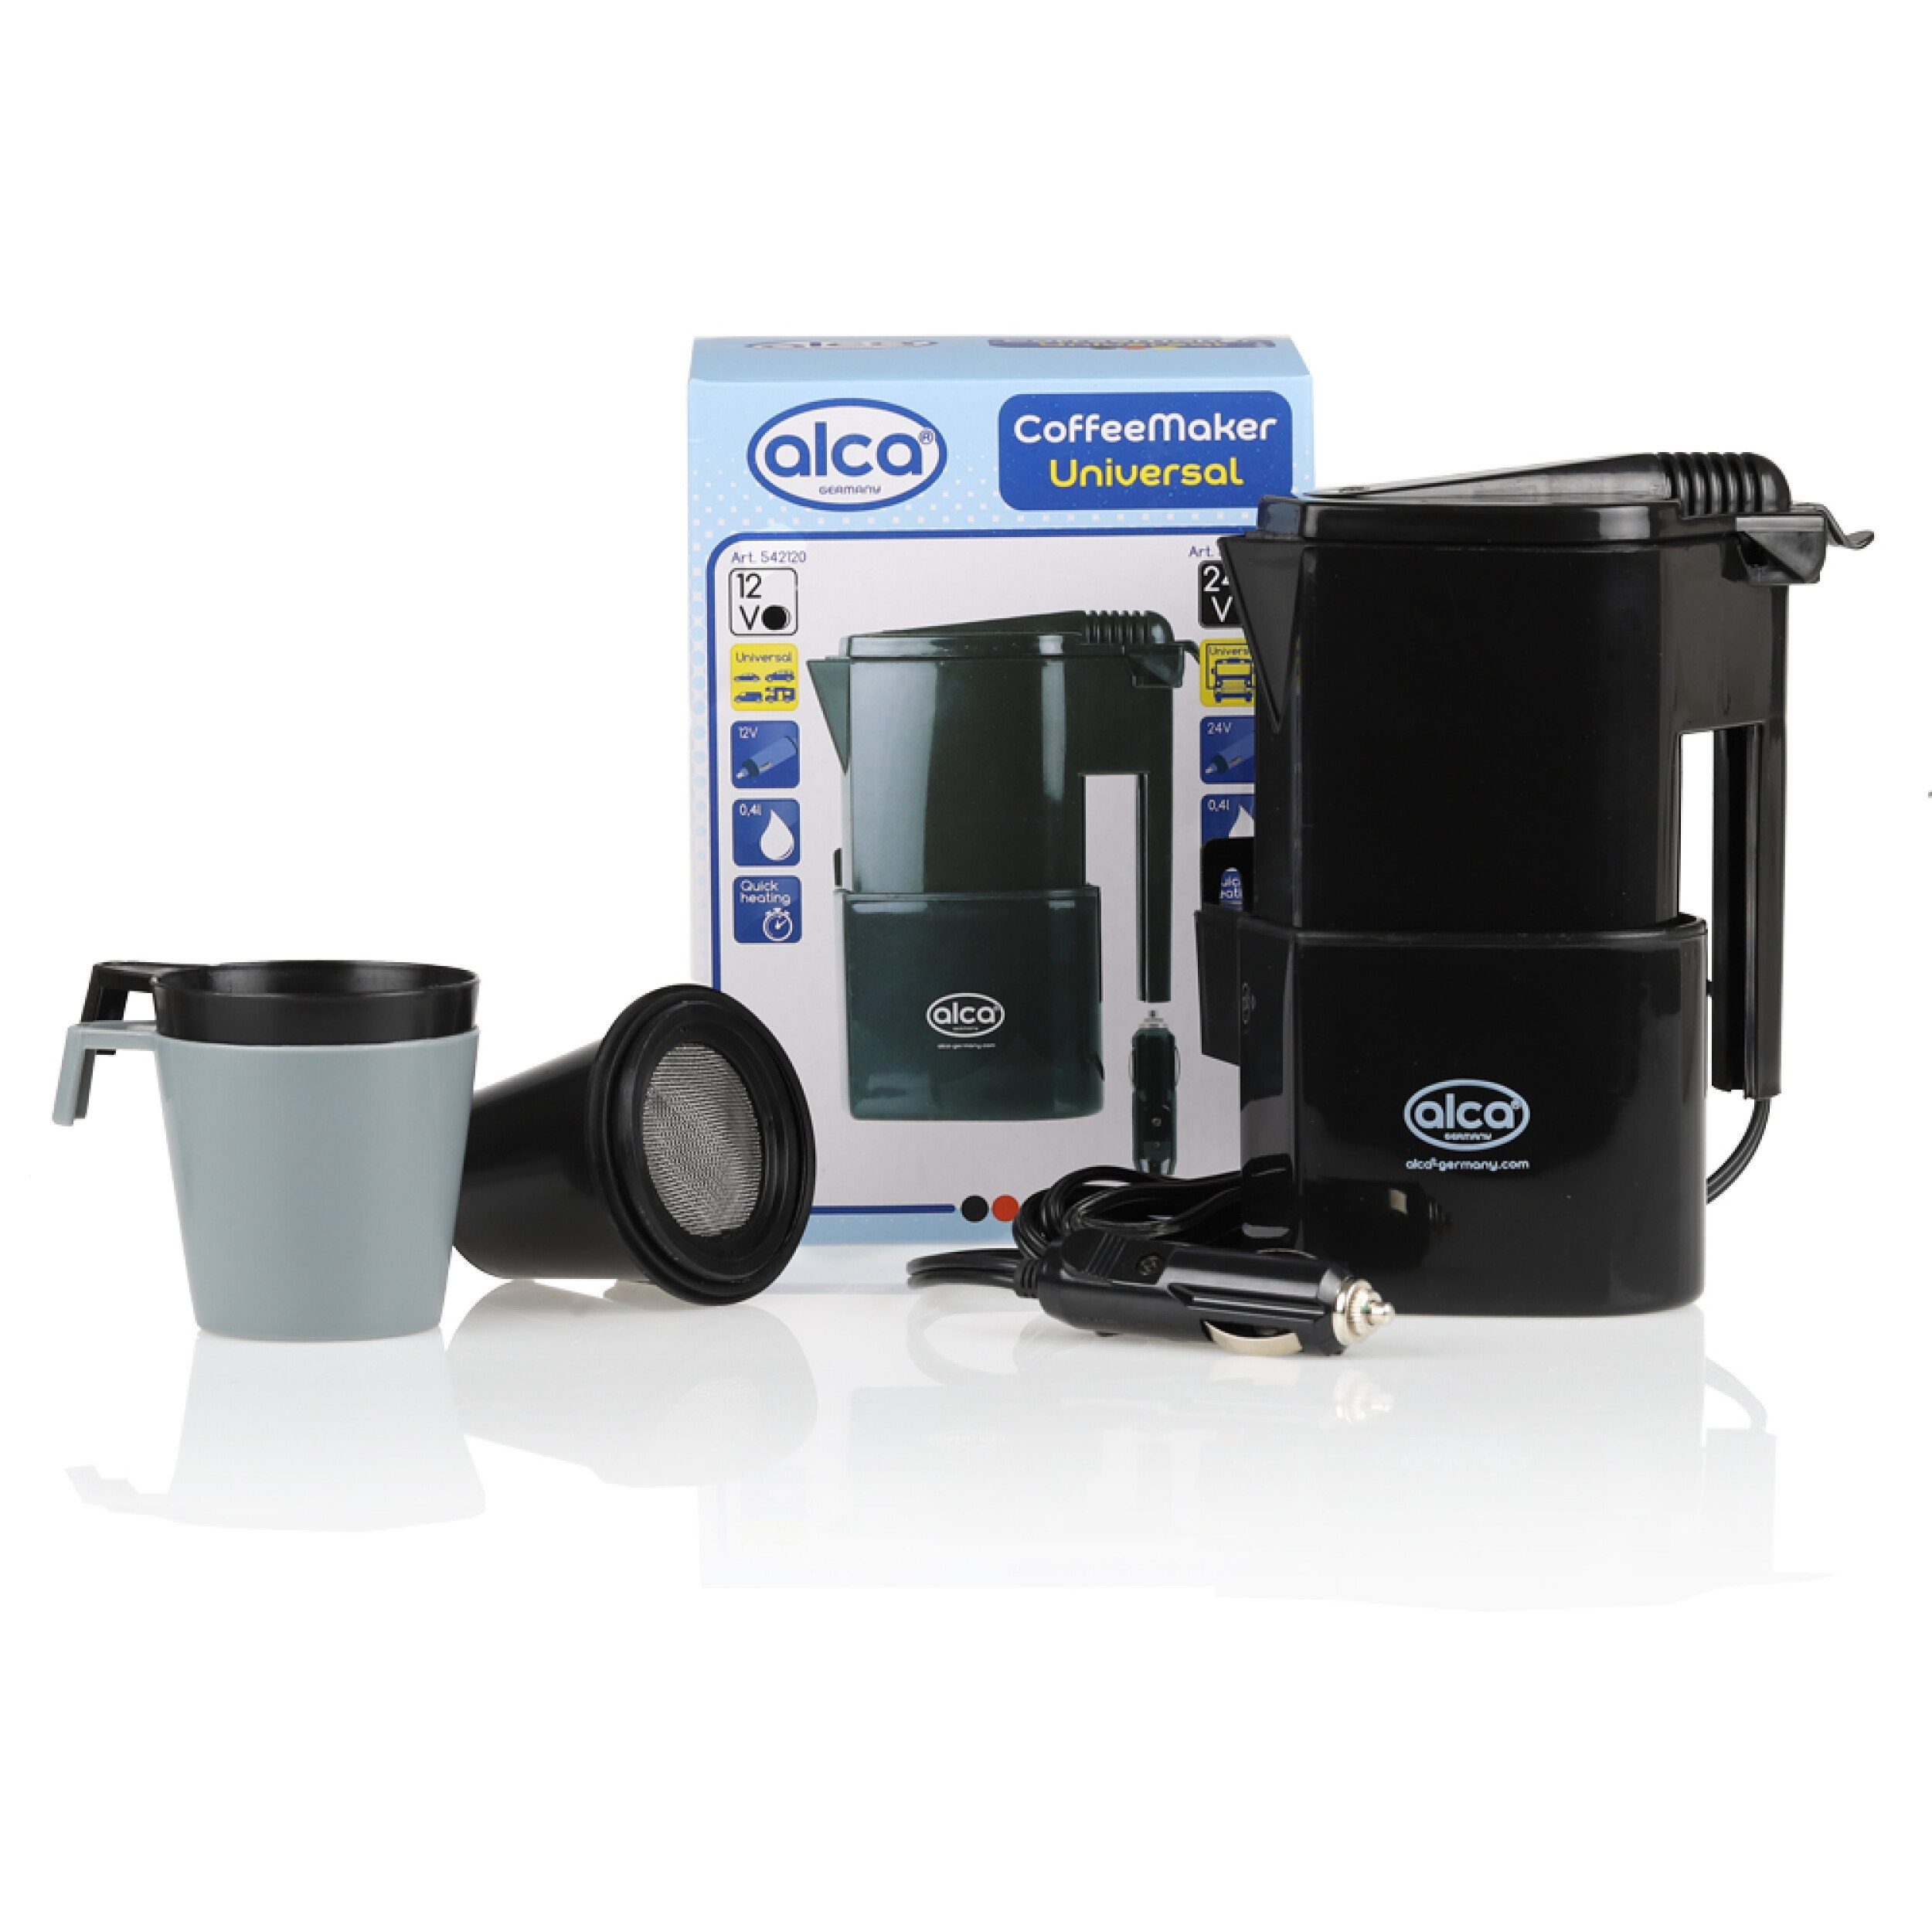 alca Reise-Wasserkocher Coffee Maker Heißwasser Bereiter 12 V, 0.4 l, 120 W